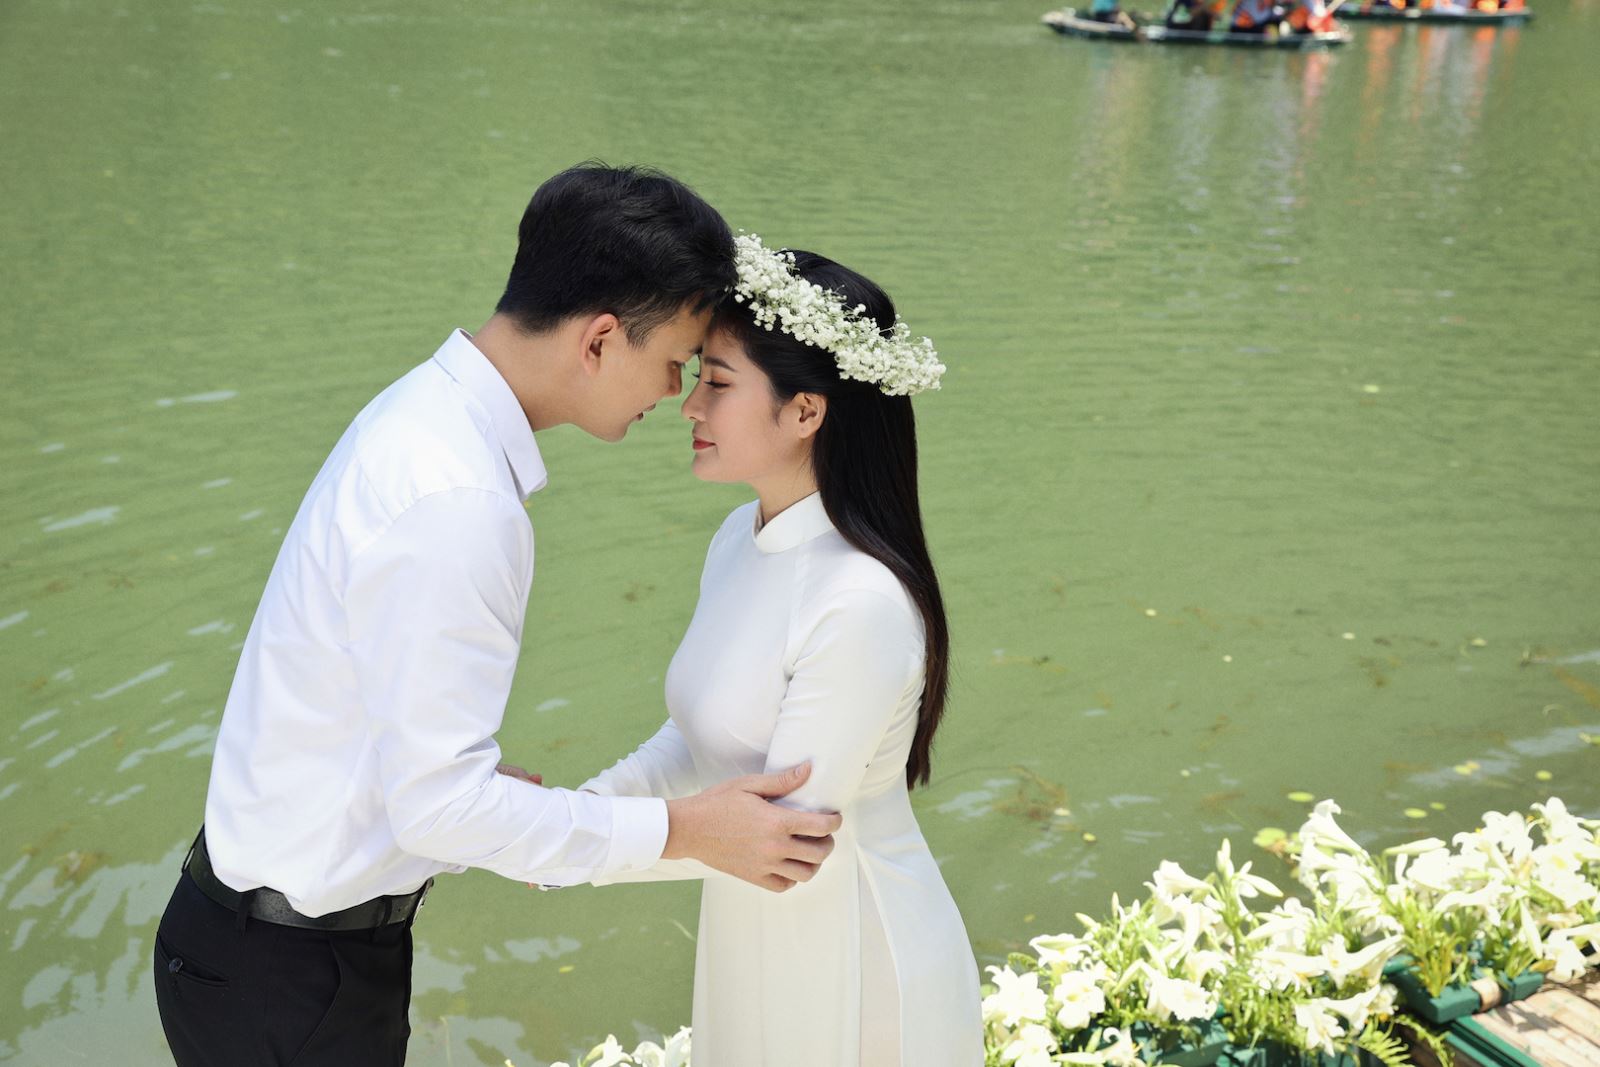 Ca sĩ Sông Thao xin chồng đóng cảnh hôn, diễn viên Dương Khánh trần tình: “Chỉ... chạm nhẹ” - 3